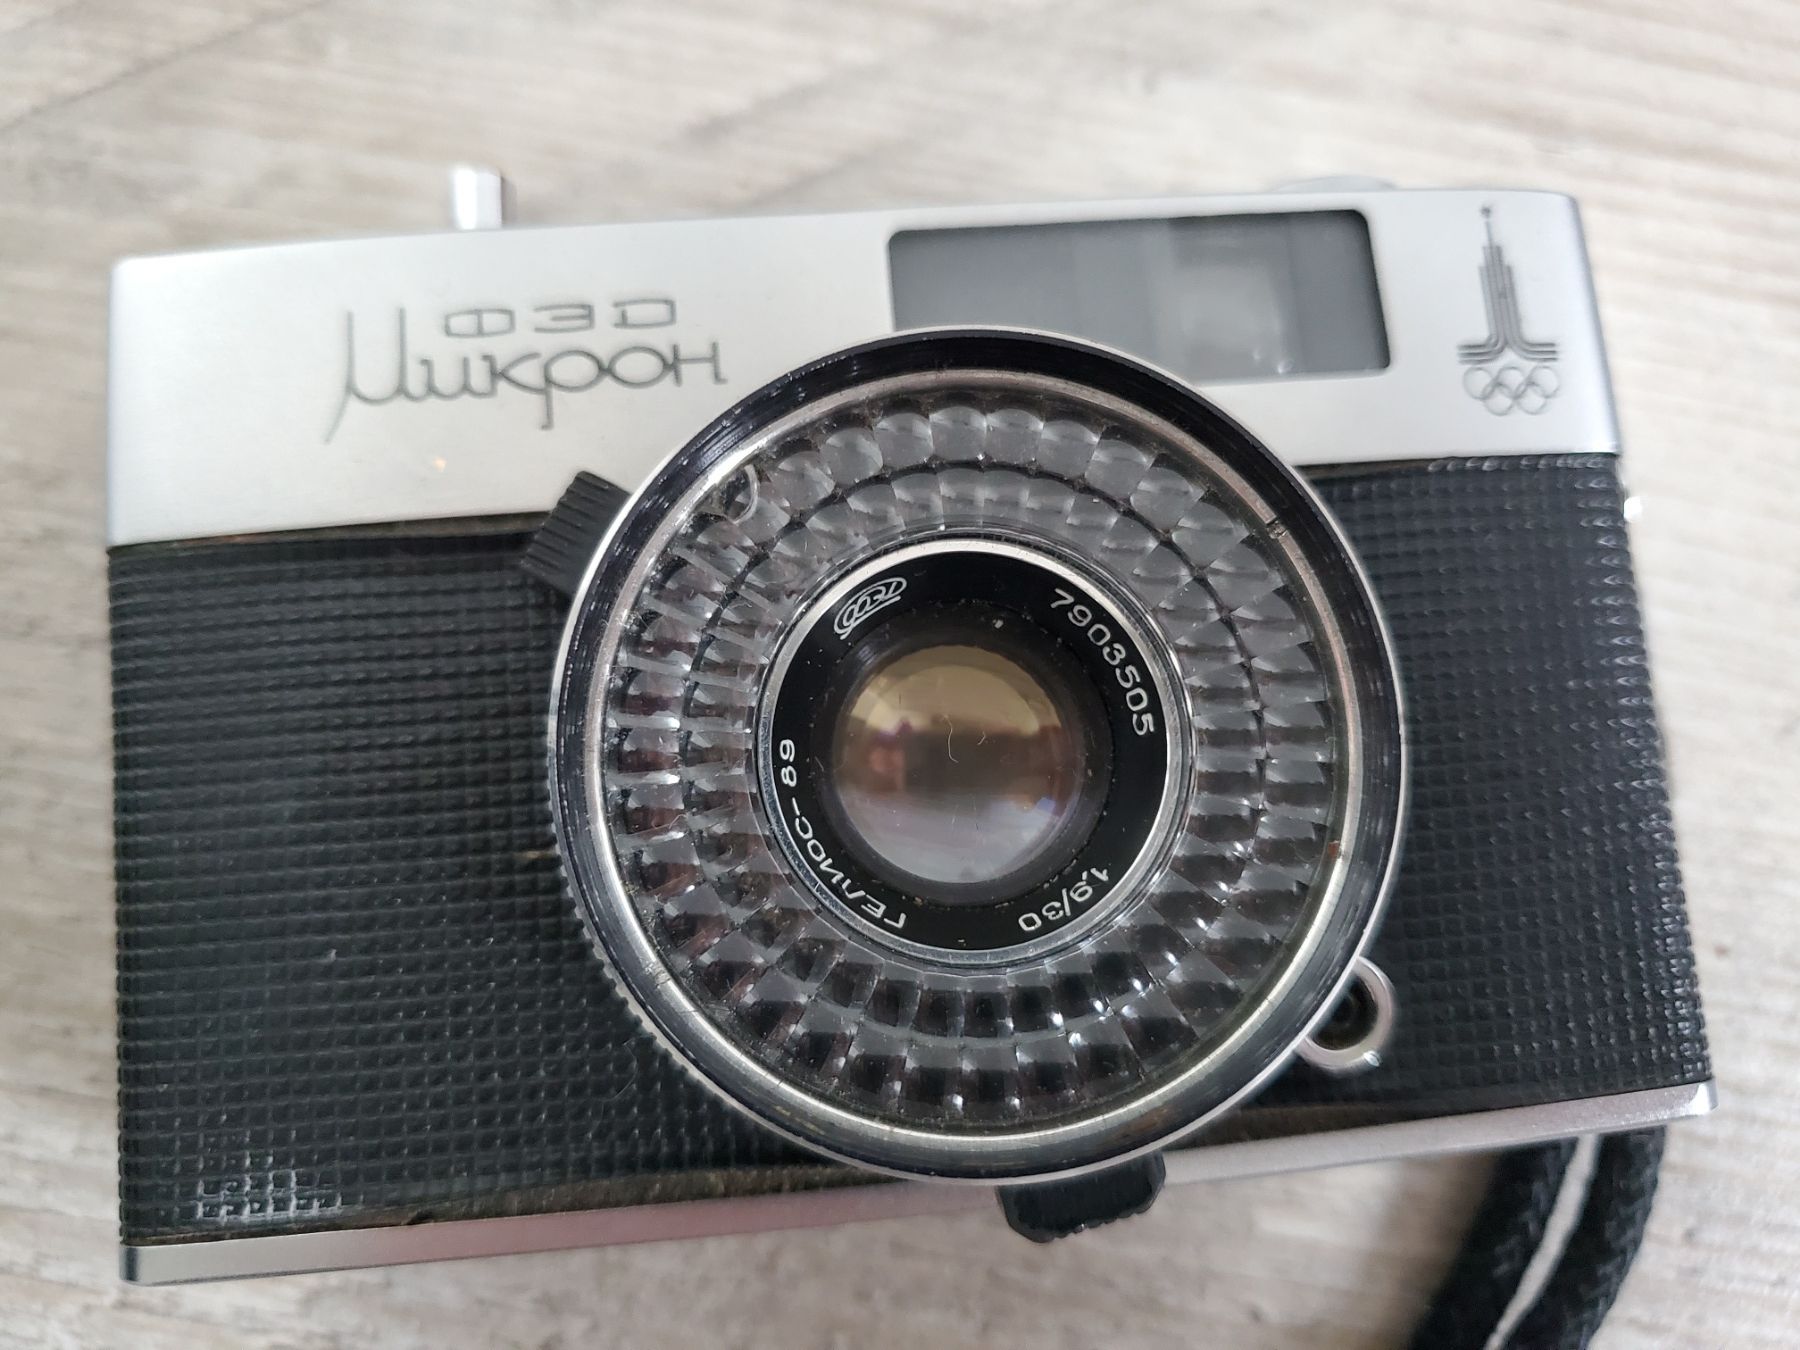 Na sprzedaż analogowy aparat fotograficzny Fed mikron Olimpiada 1980